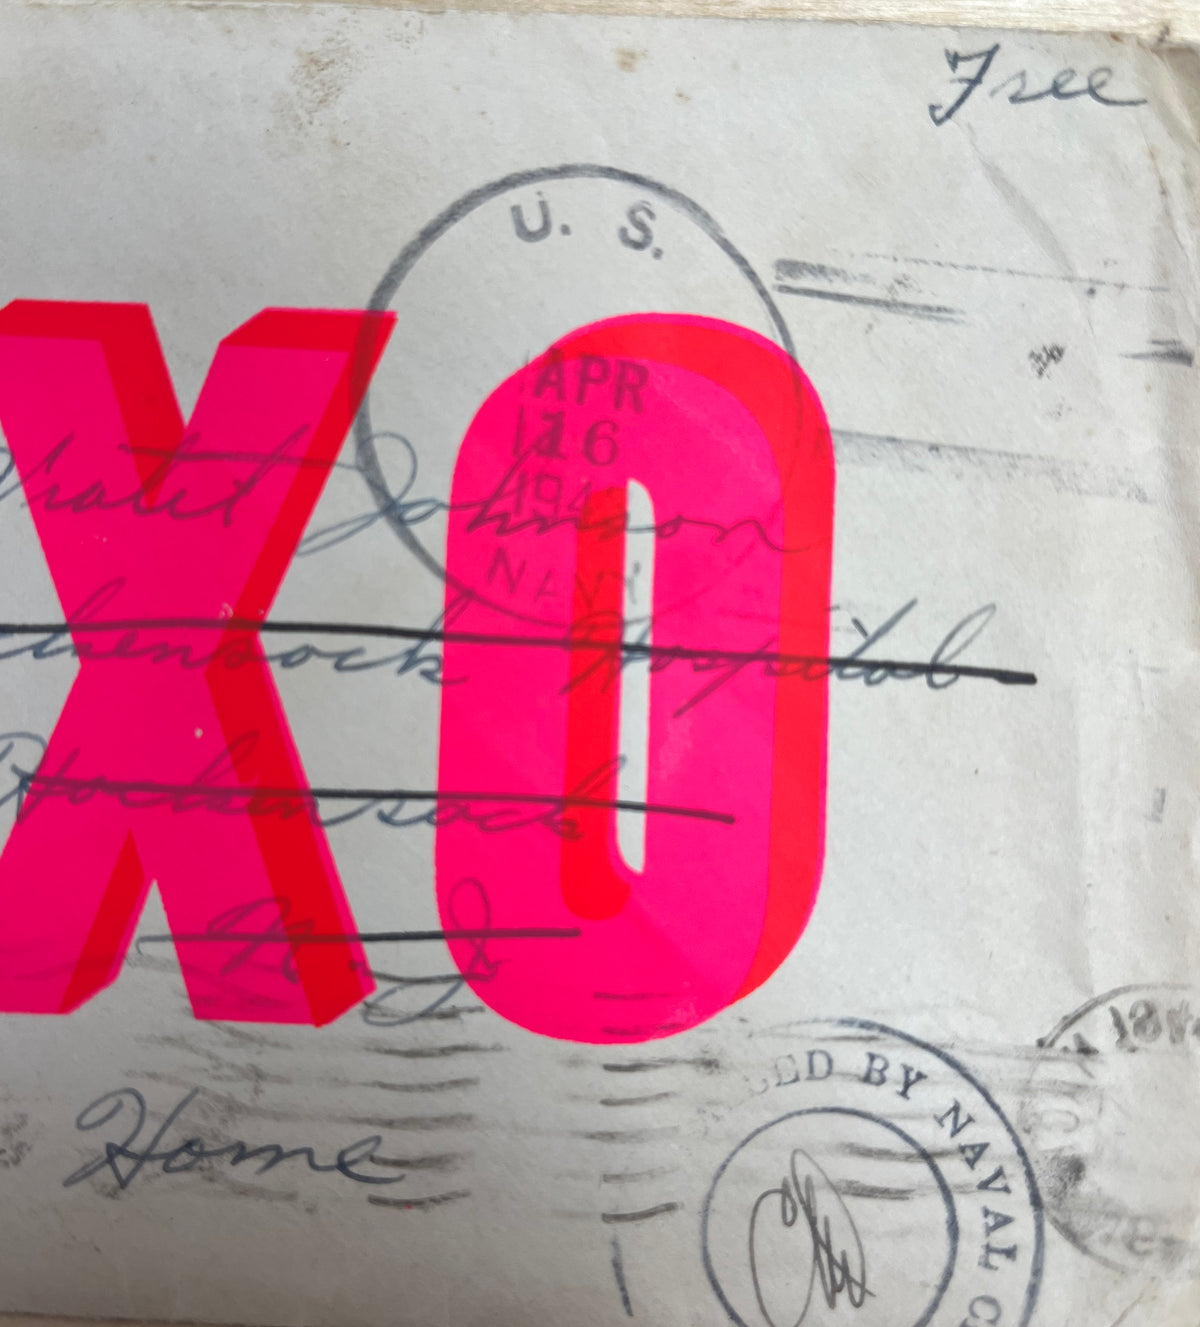 XOXO by Dave Buonaguidi